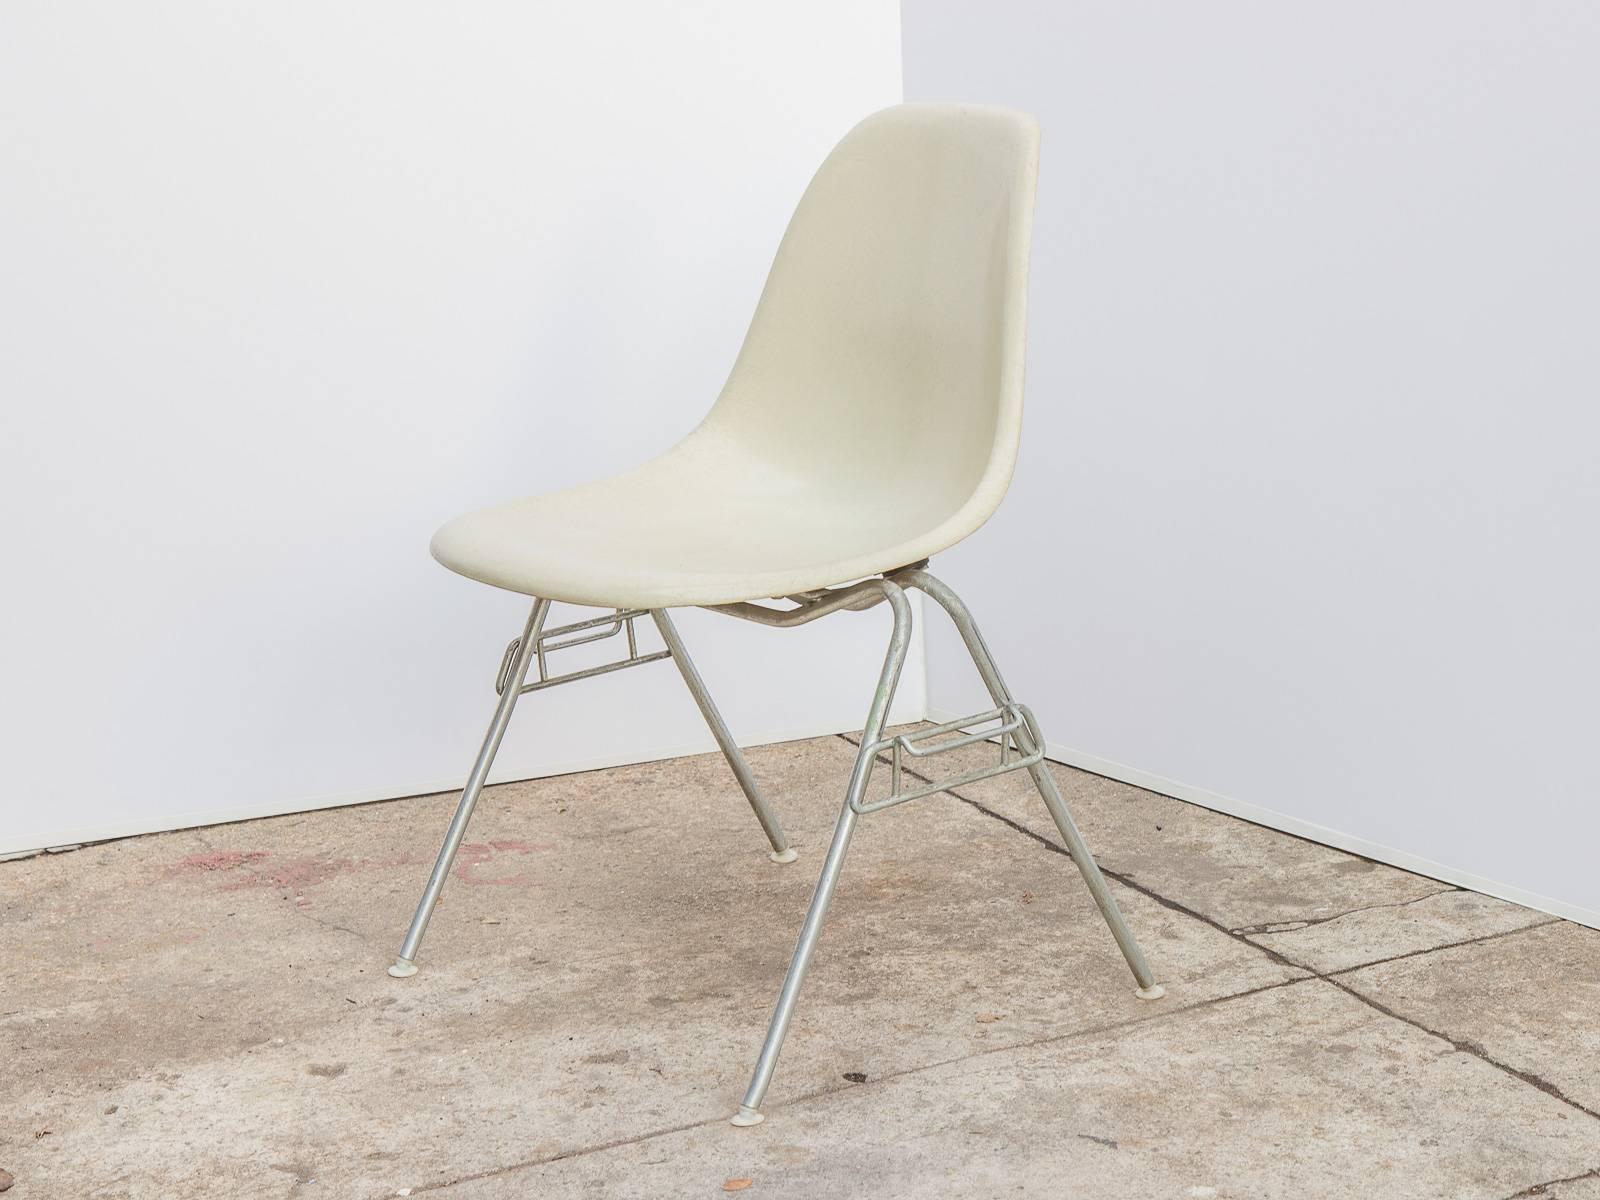 Original 1960er Jahre geformt Fiberglas Pergament weißen Schale Stühle auf Stapeln Basis, entworfen von Charles und Ray Eames für Herman Miller. Die glänzenden Muscheln sind im Originalzustand, jede mit einer ausgeprägten, feinen Textur.  Hier auf